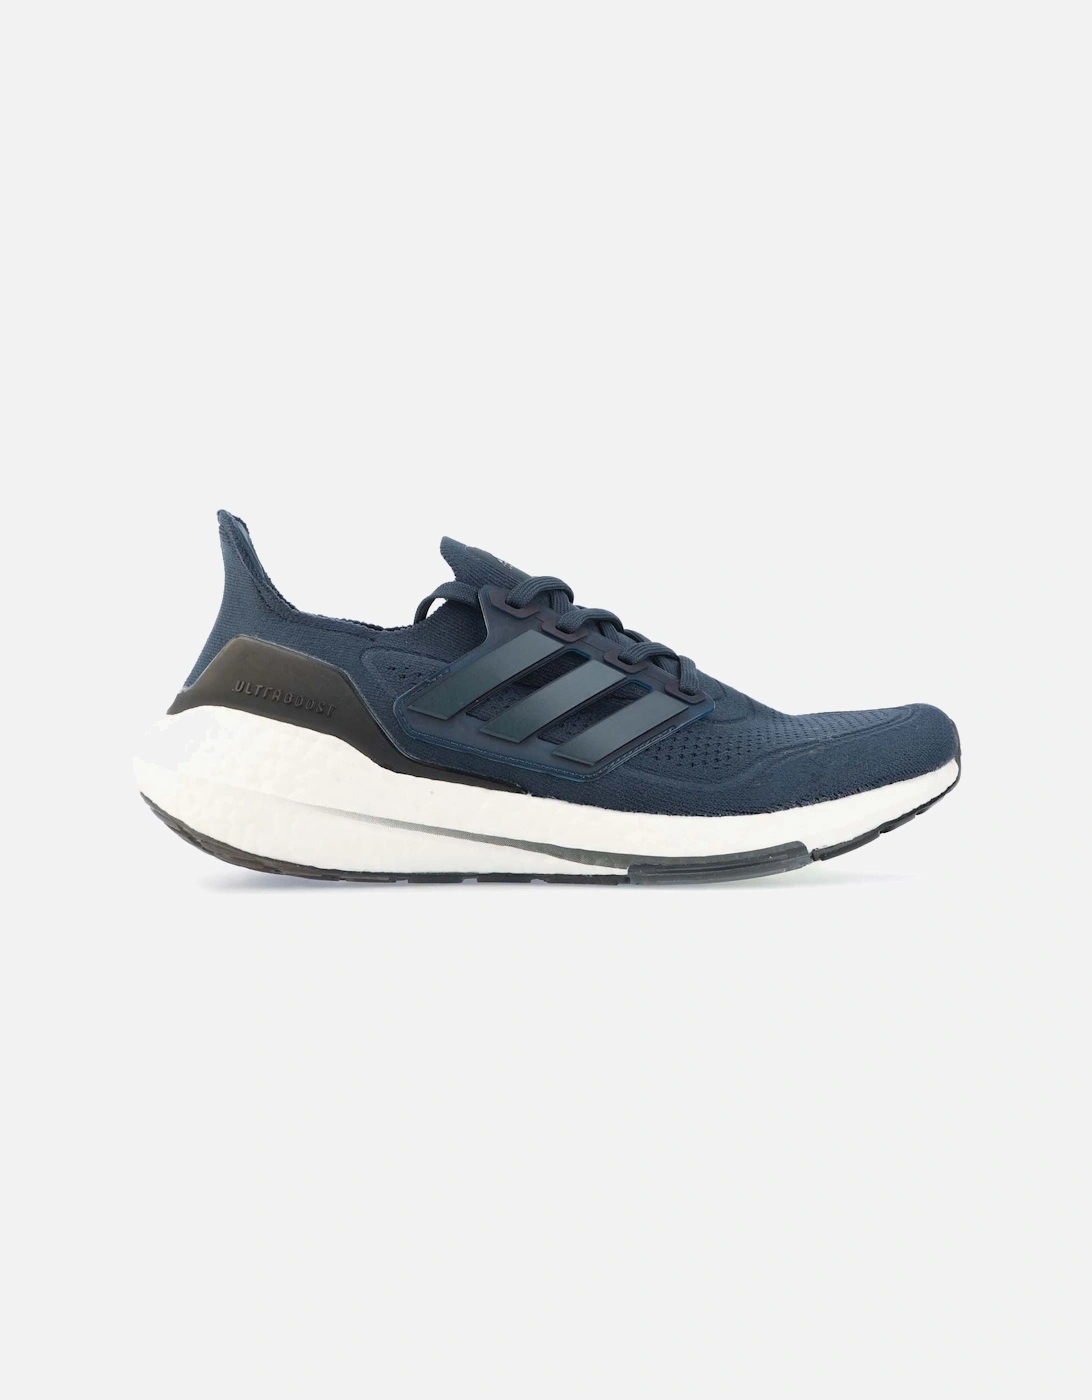 Men's Mens Ultraboost 21 Running Shoes - Blue/Dark (Shade)/Navy